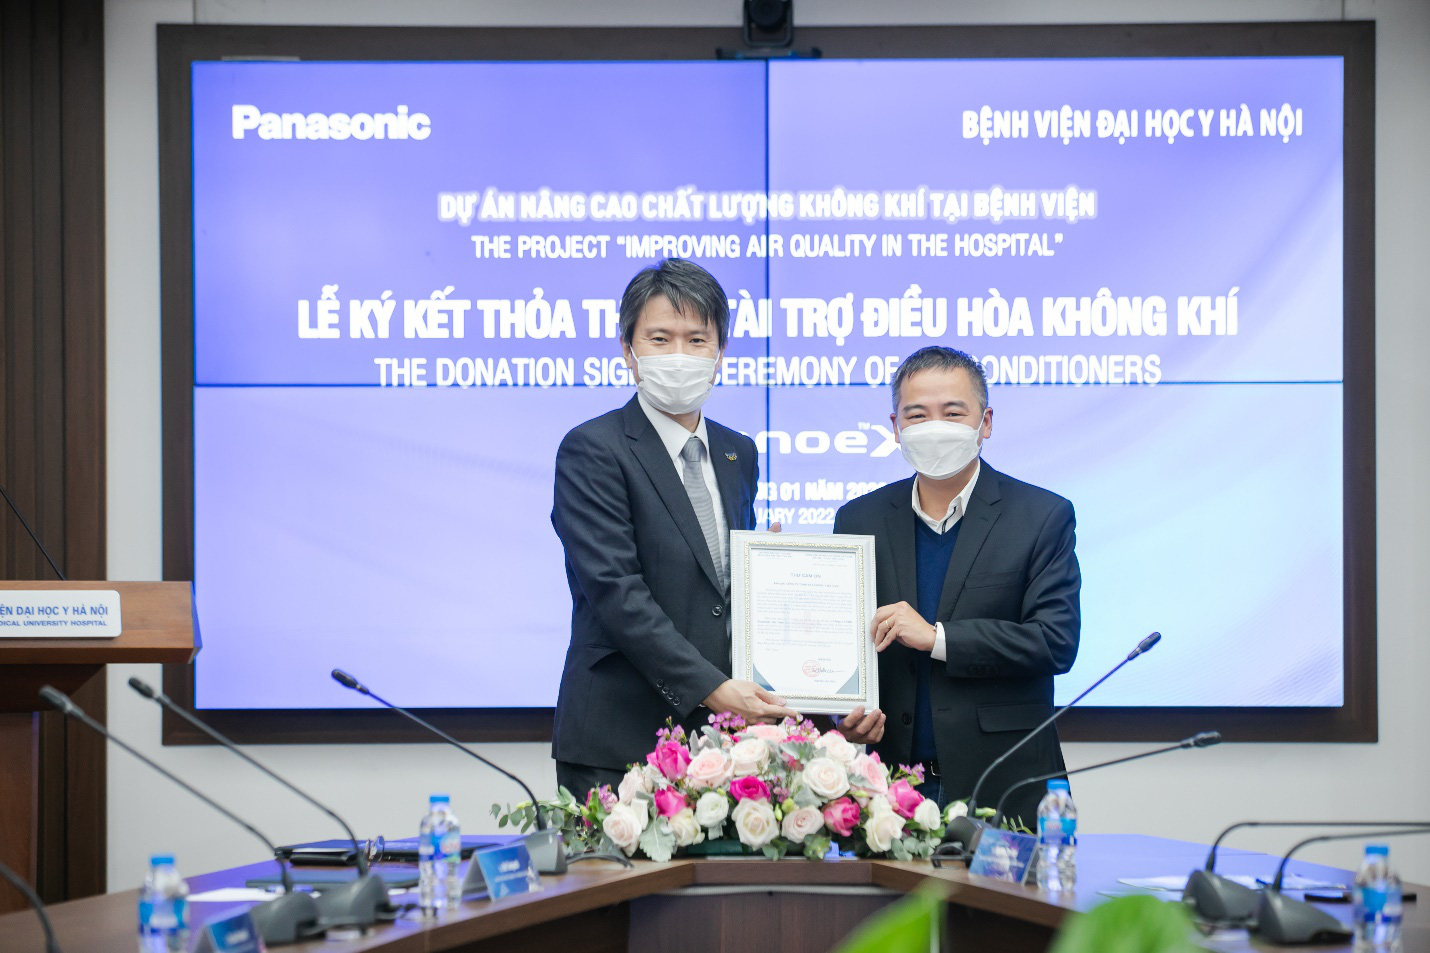 Panasonic khởi động dự án “Nâng cao chất lượng không khí tại bệnh viện” trao tặng điều hòa tích hợp công nghệ lọc khí nanoeTM X - Ảnh 1.